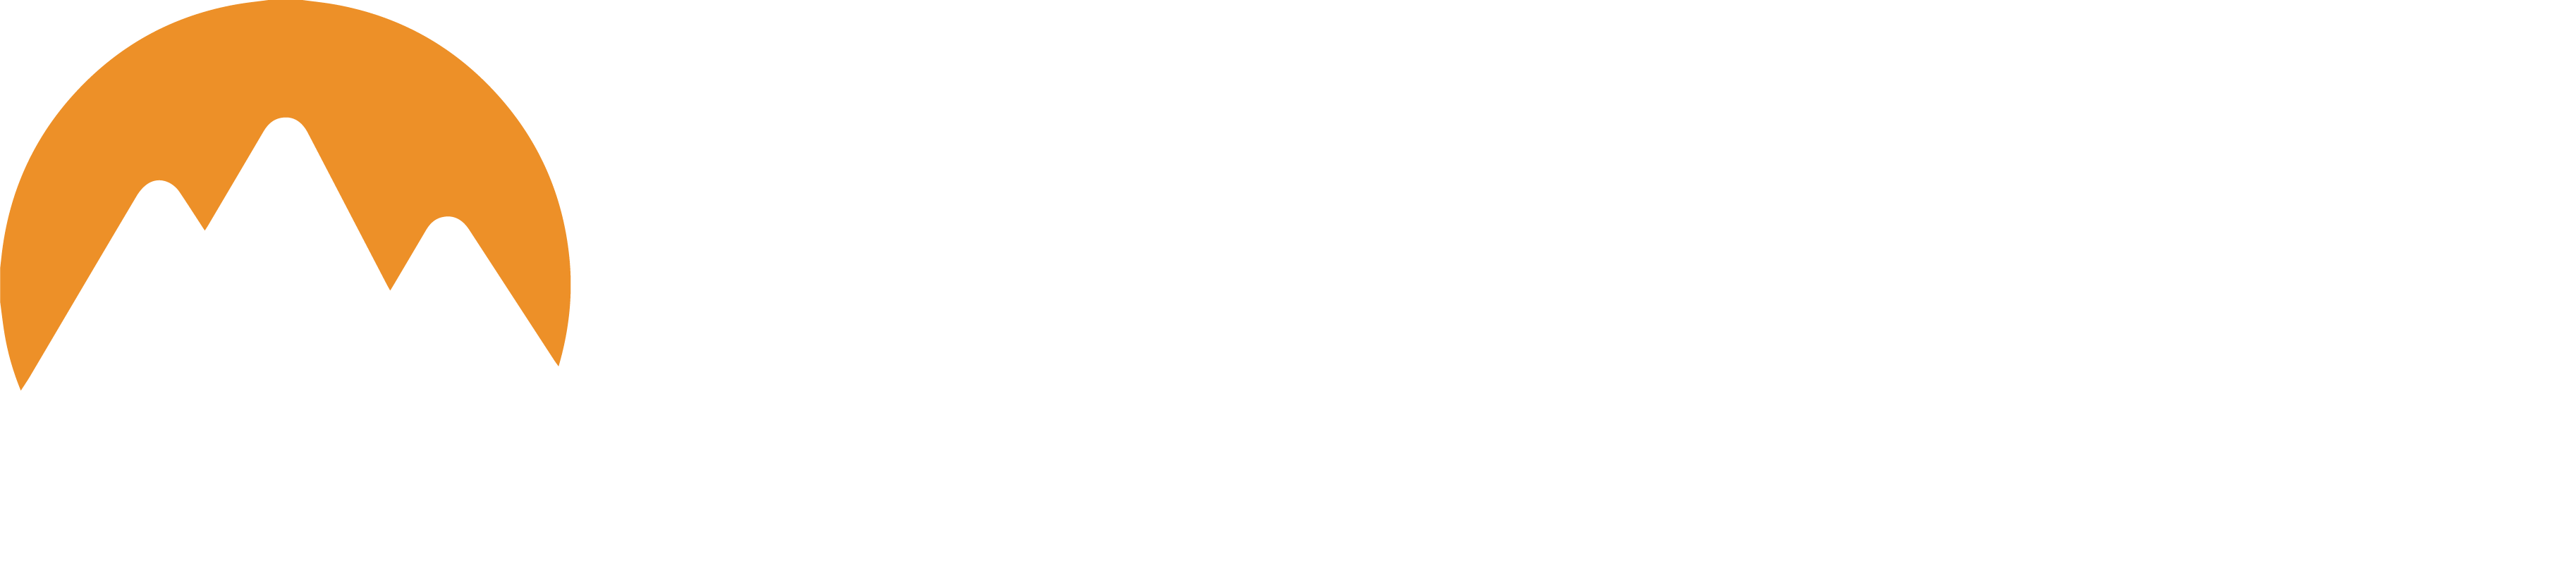 異想天開影像製作 EXTRA STUDIO